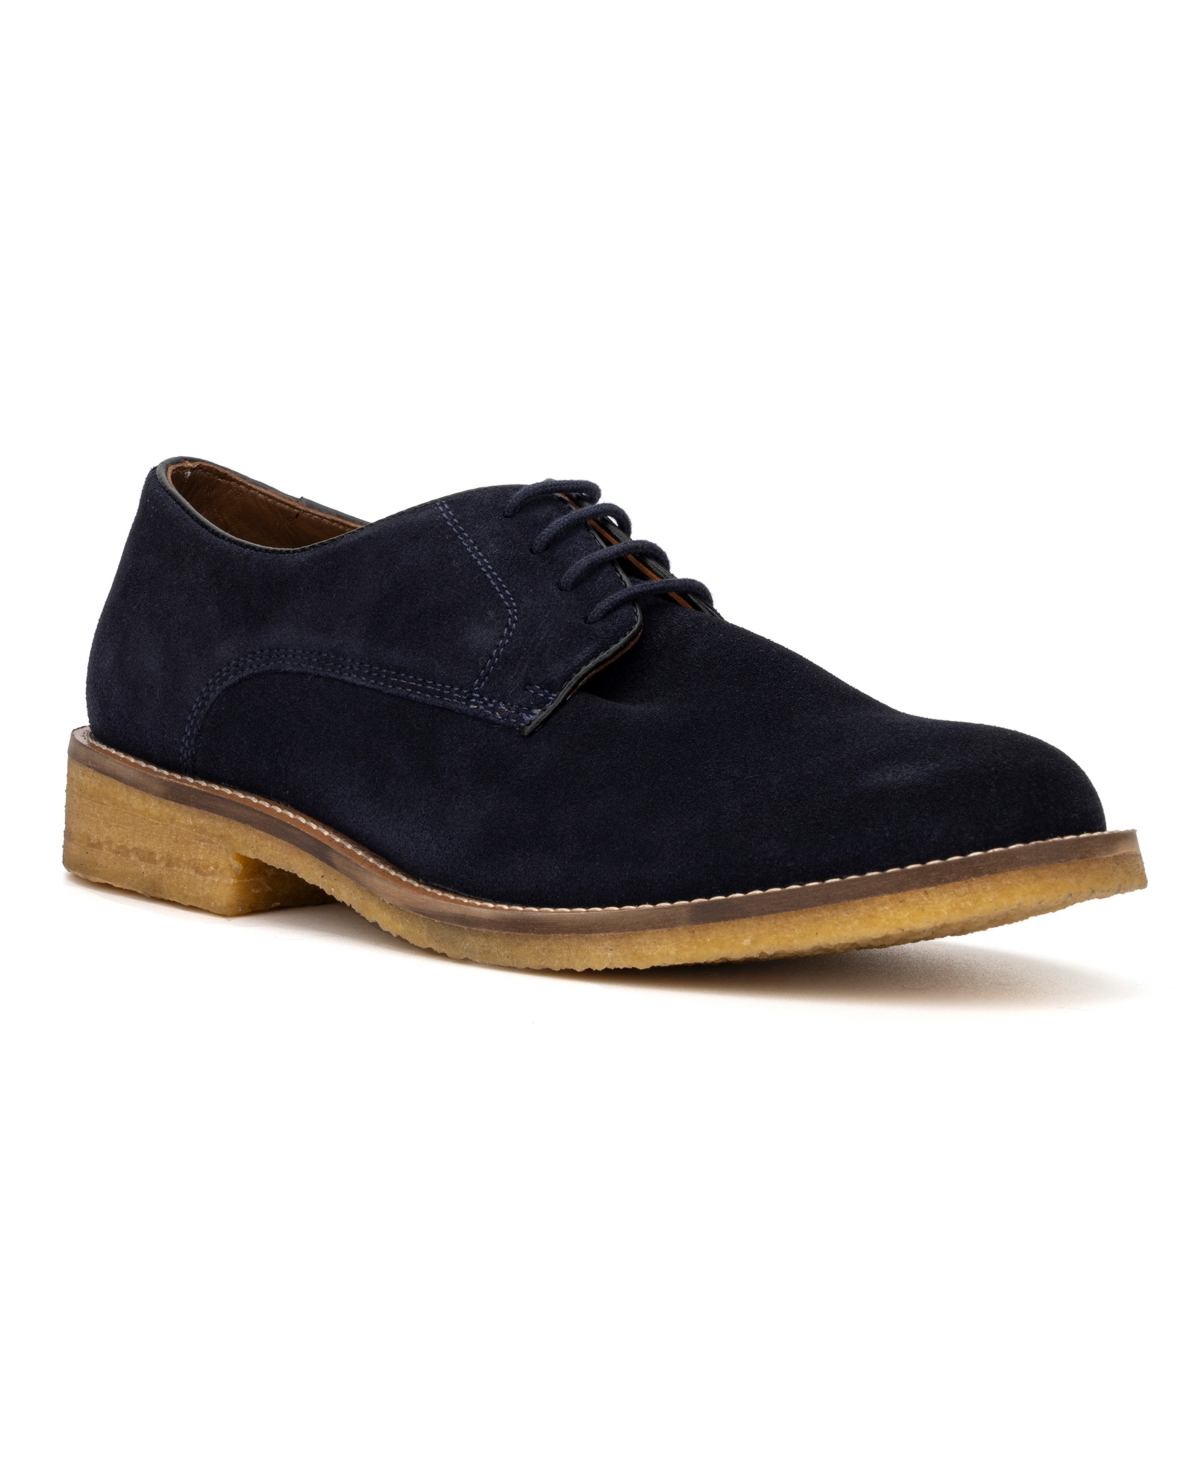 Men's Octavious Oxford Shoes - Brown